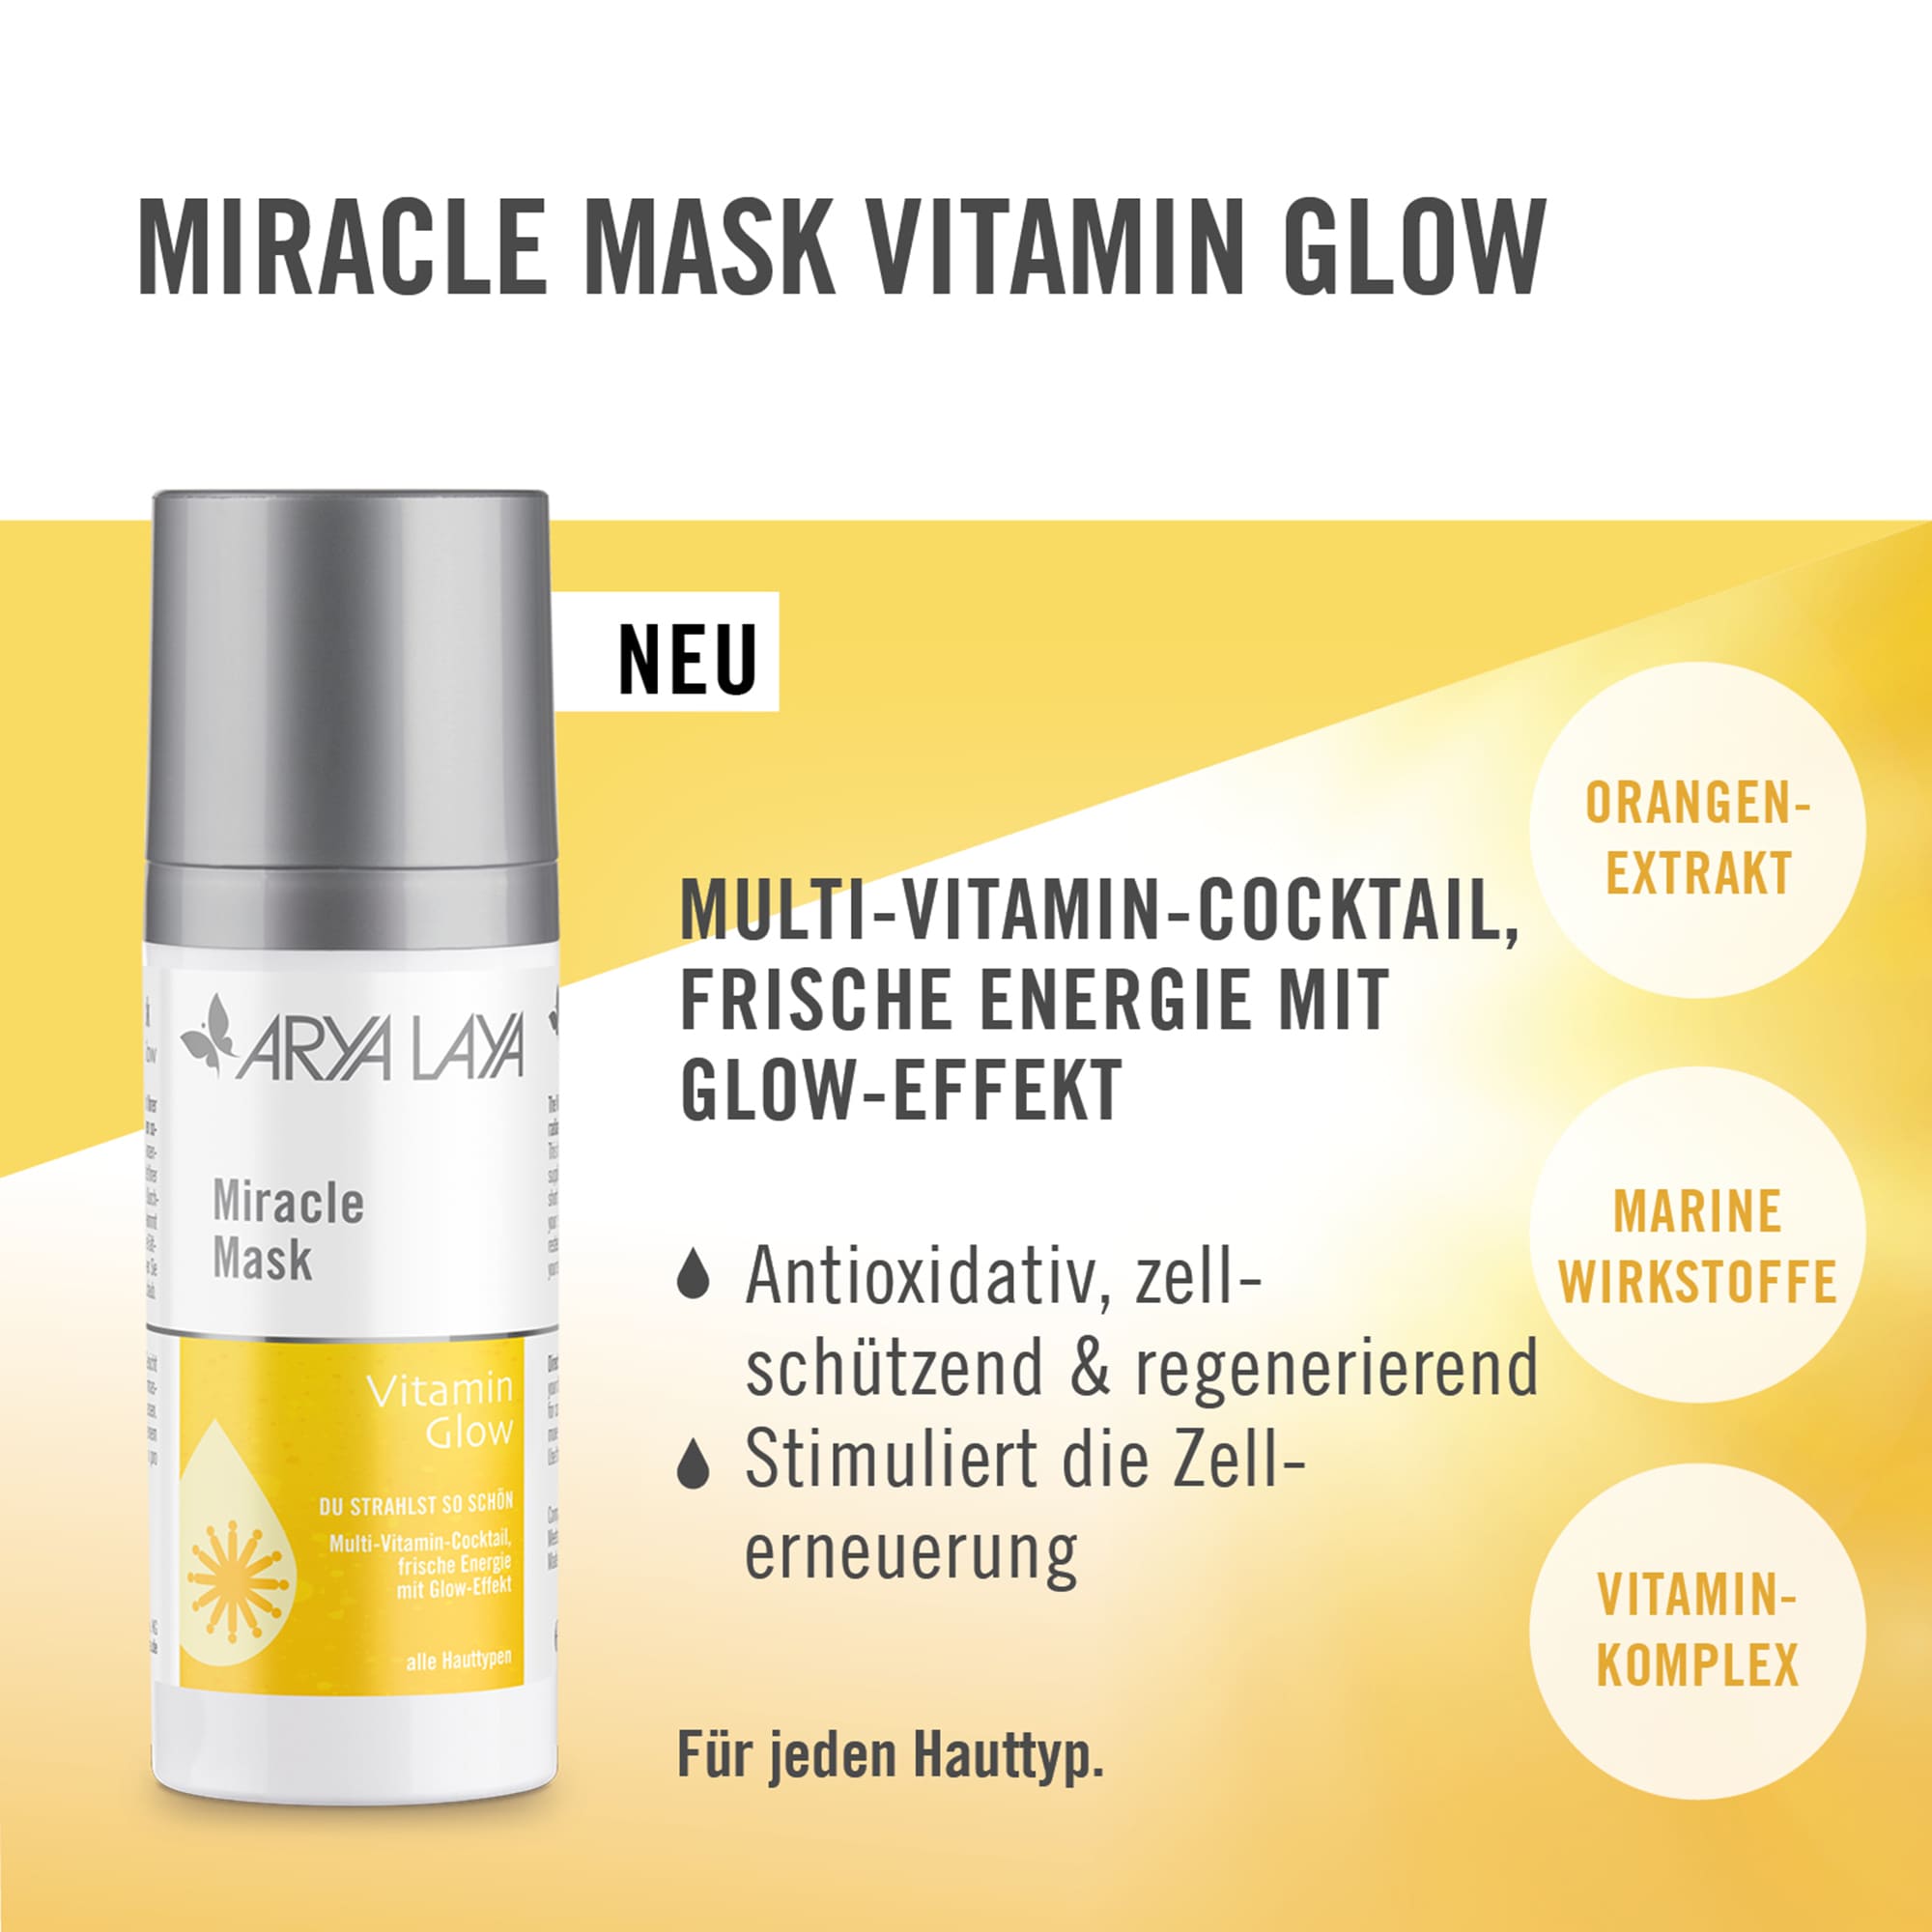 Anwendung ARYA LAYA Miracle Mask Vitamin Glow